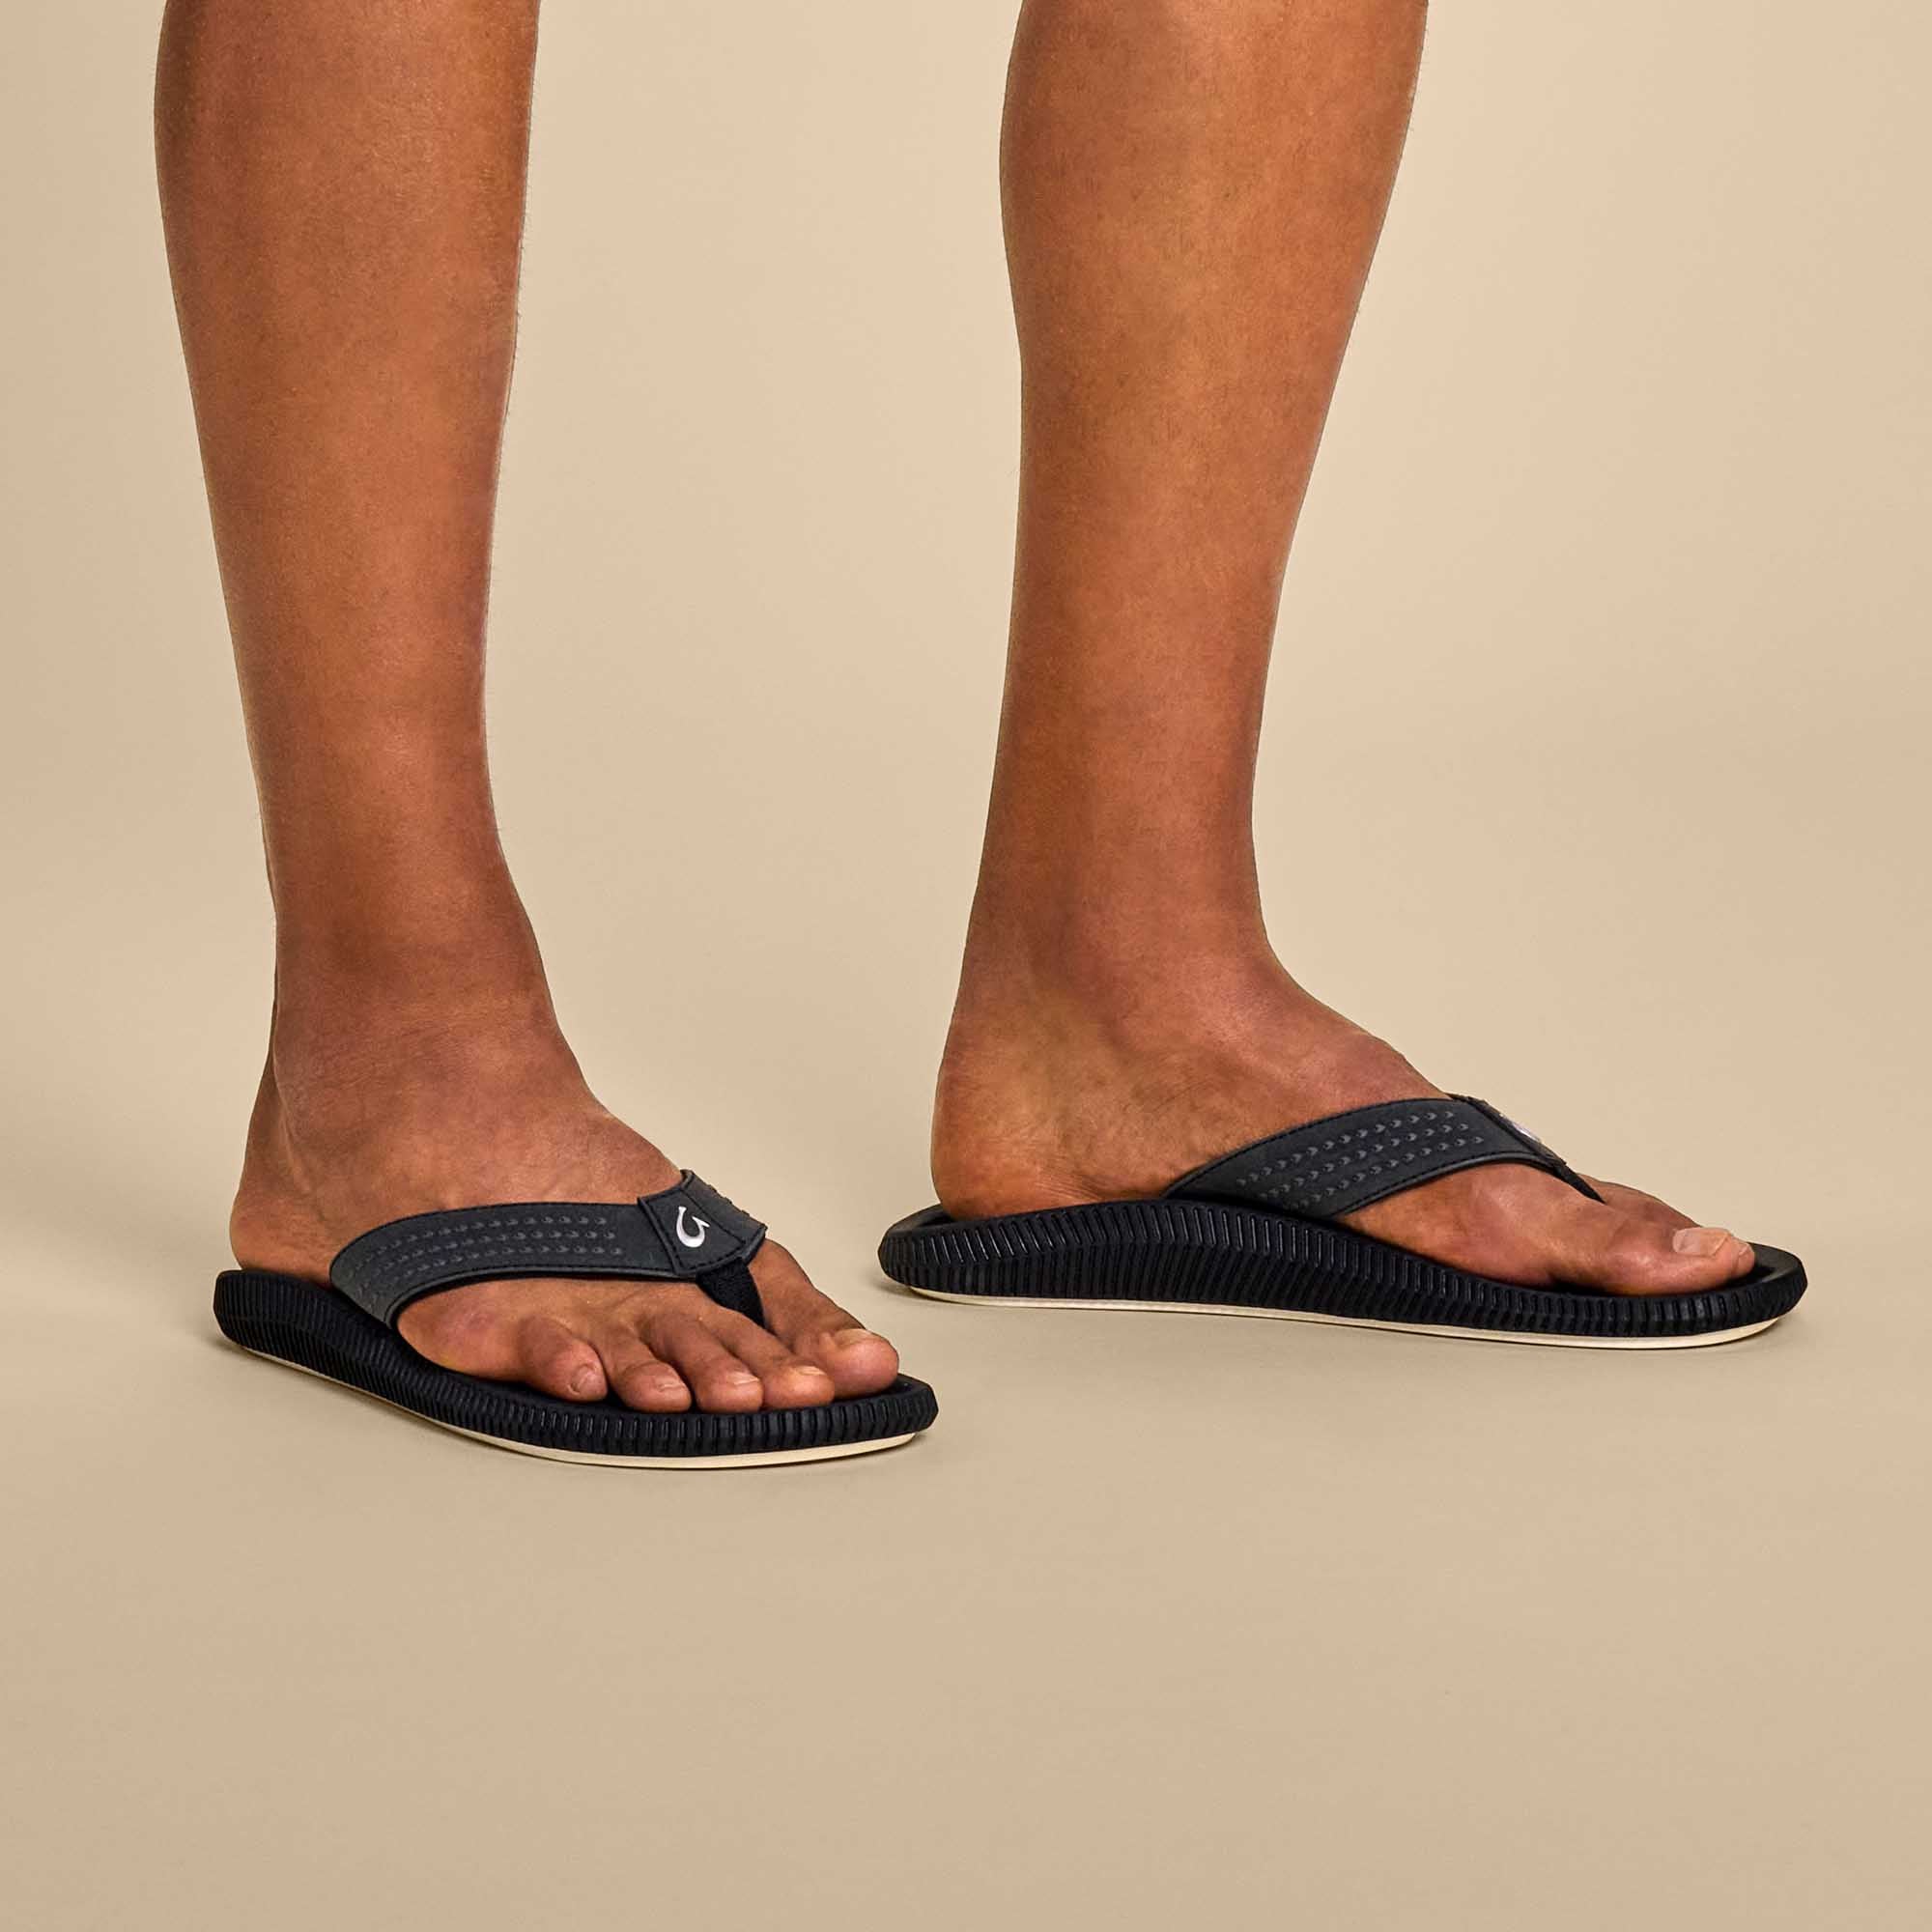 Men's Comfort Sandals